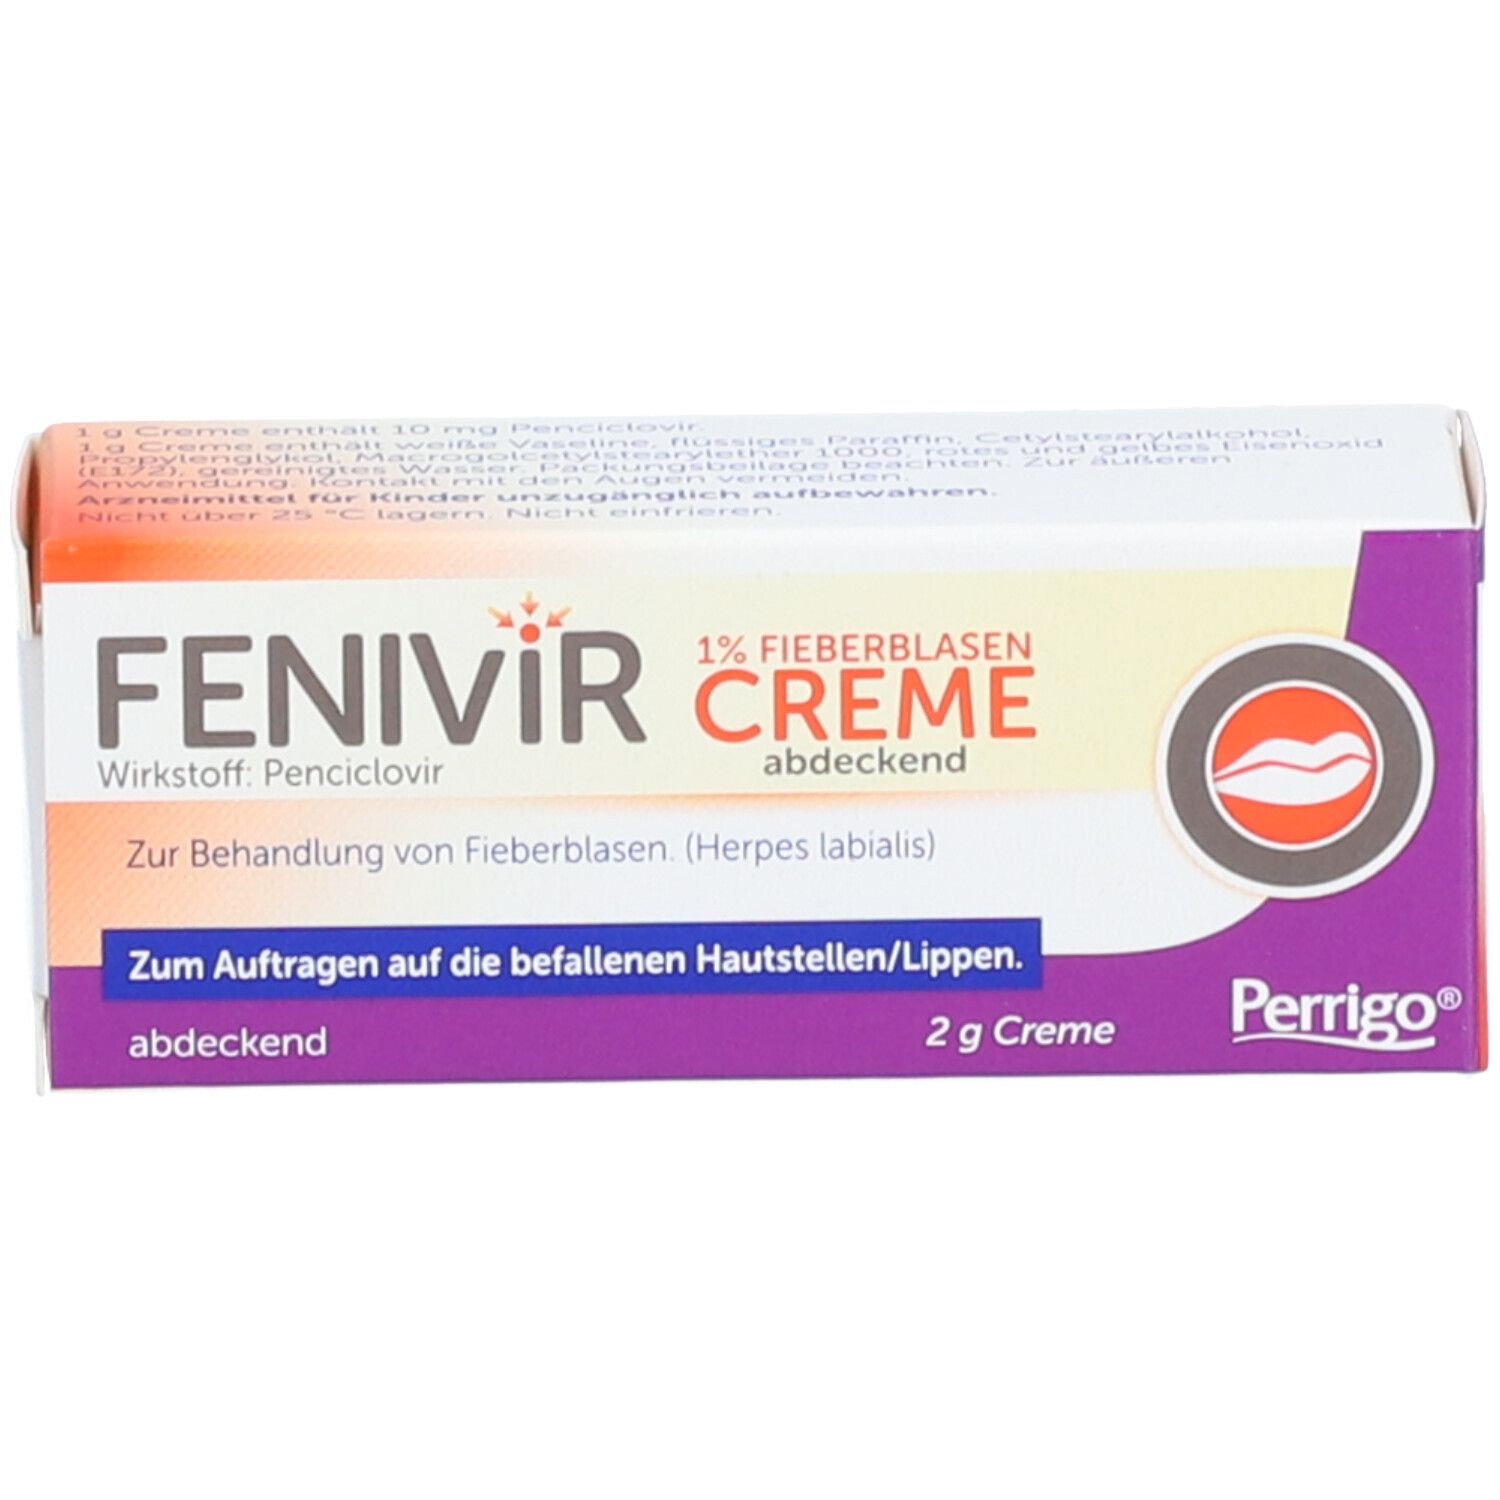 Fenivir® 1 % Fieberblasencreme abdeckend